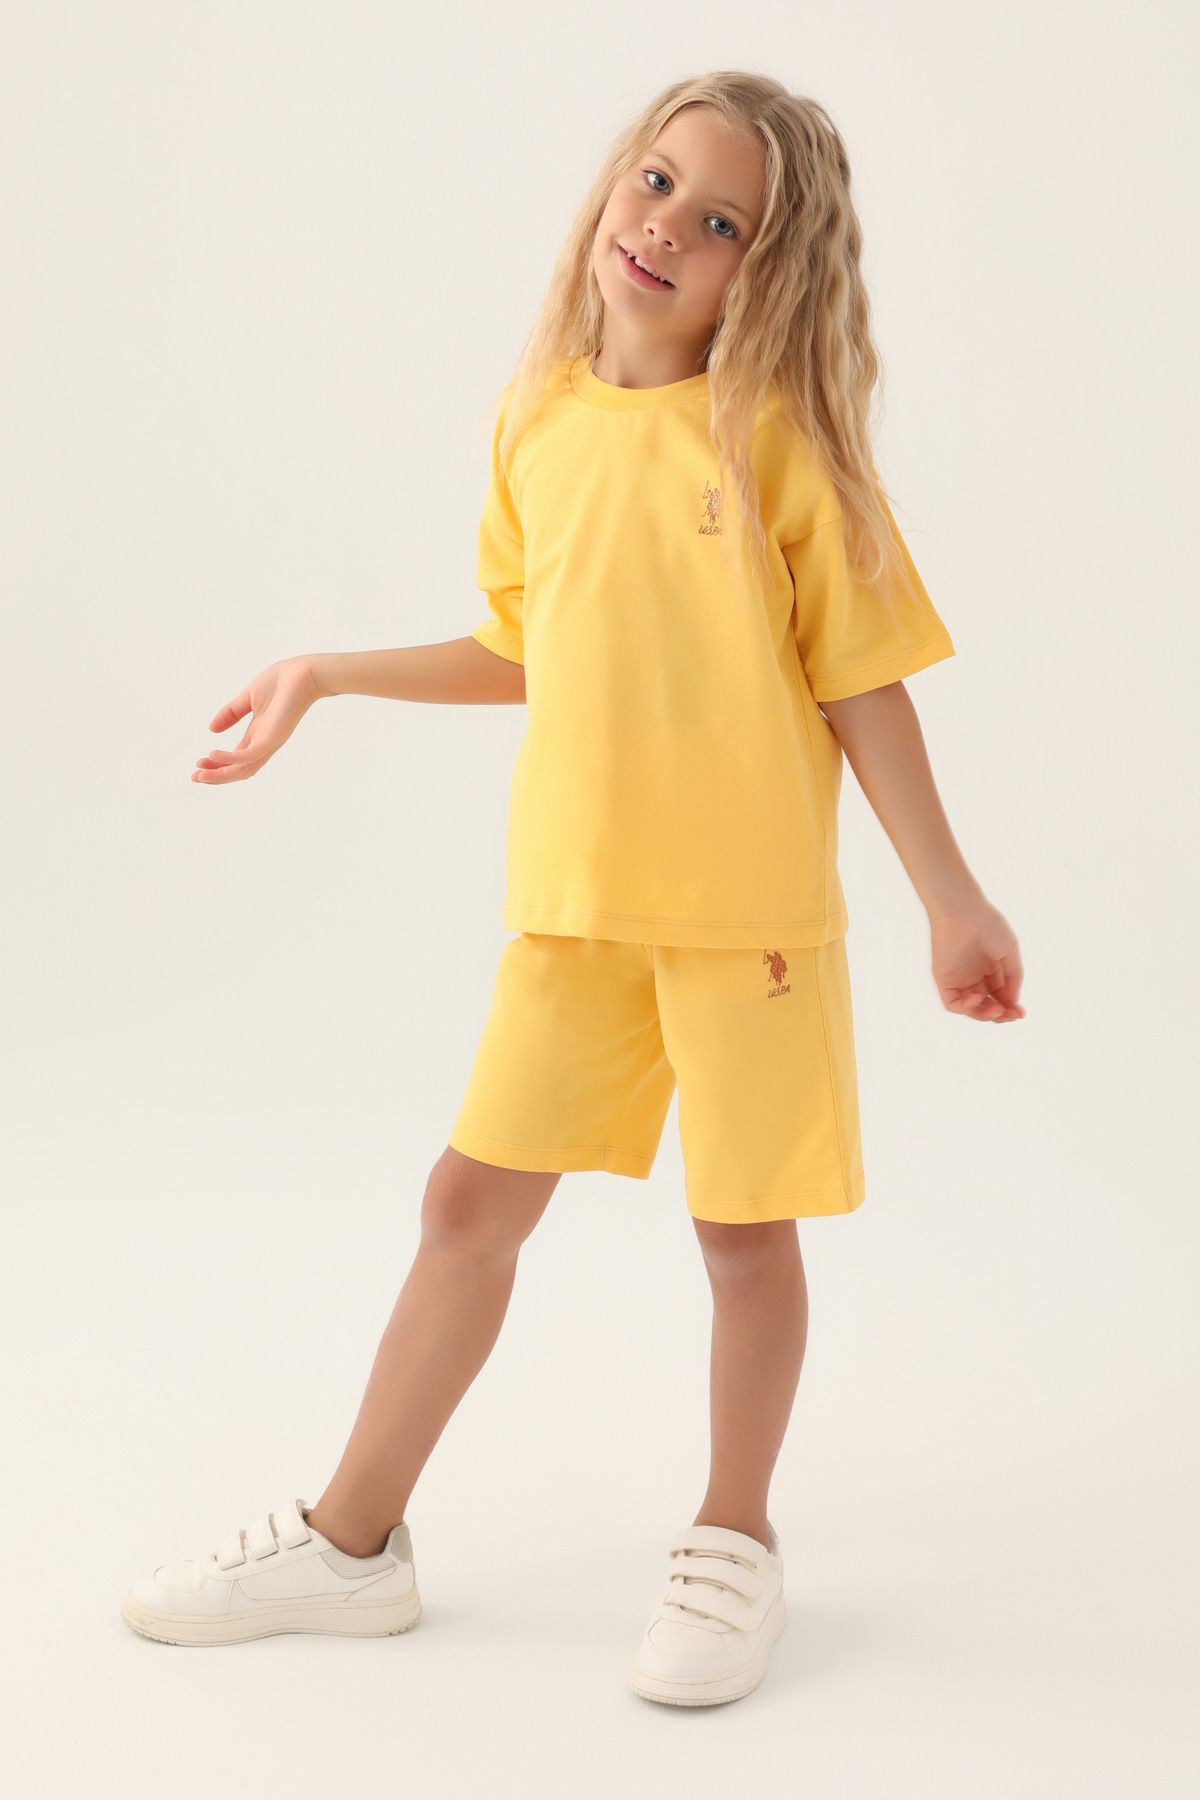 Костюм повседневный детский U.S. POLO Assn. US1822-V1, желтый, 158 костюм повседневный детский u s polo assn us1822 v1 розовая пудра 170